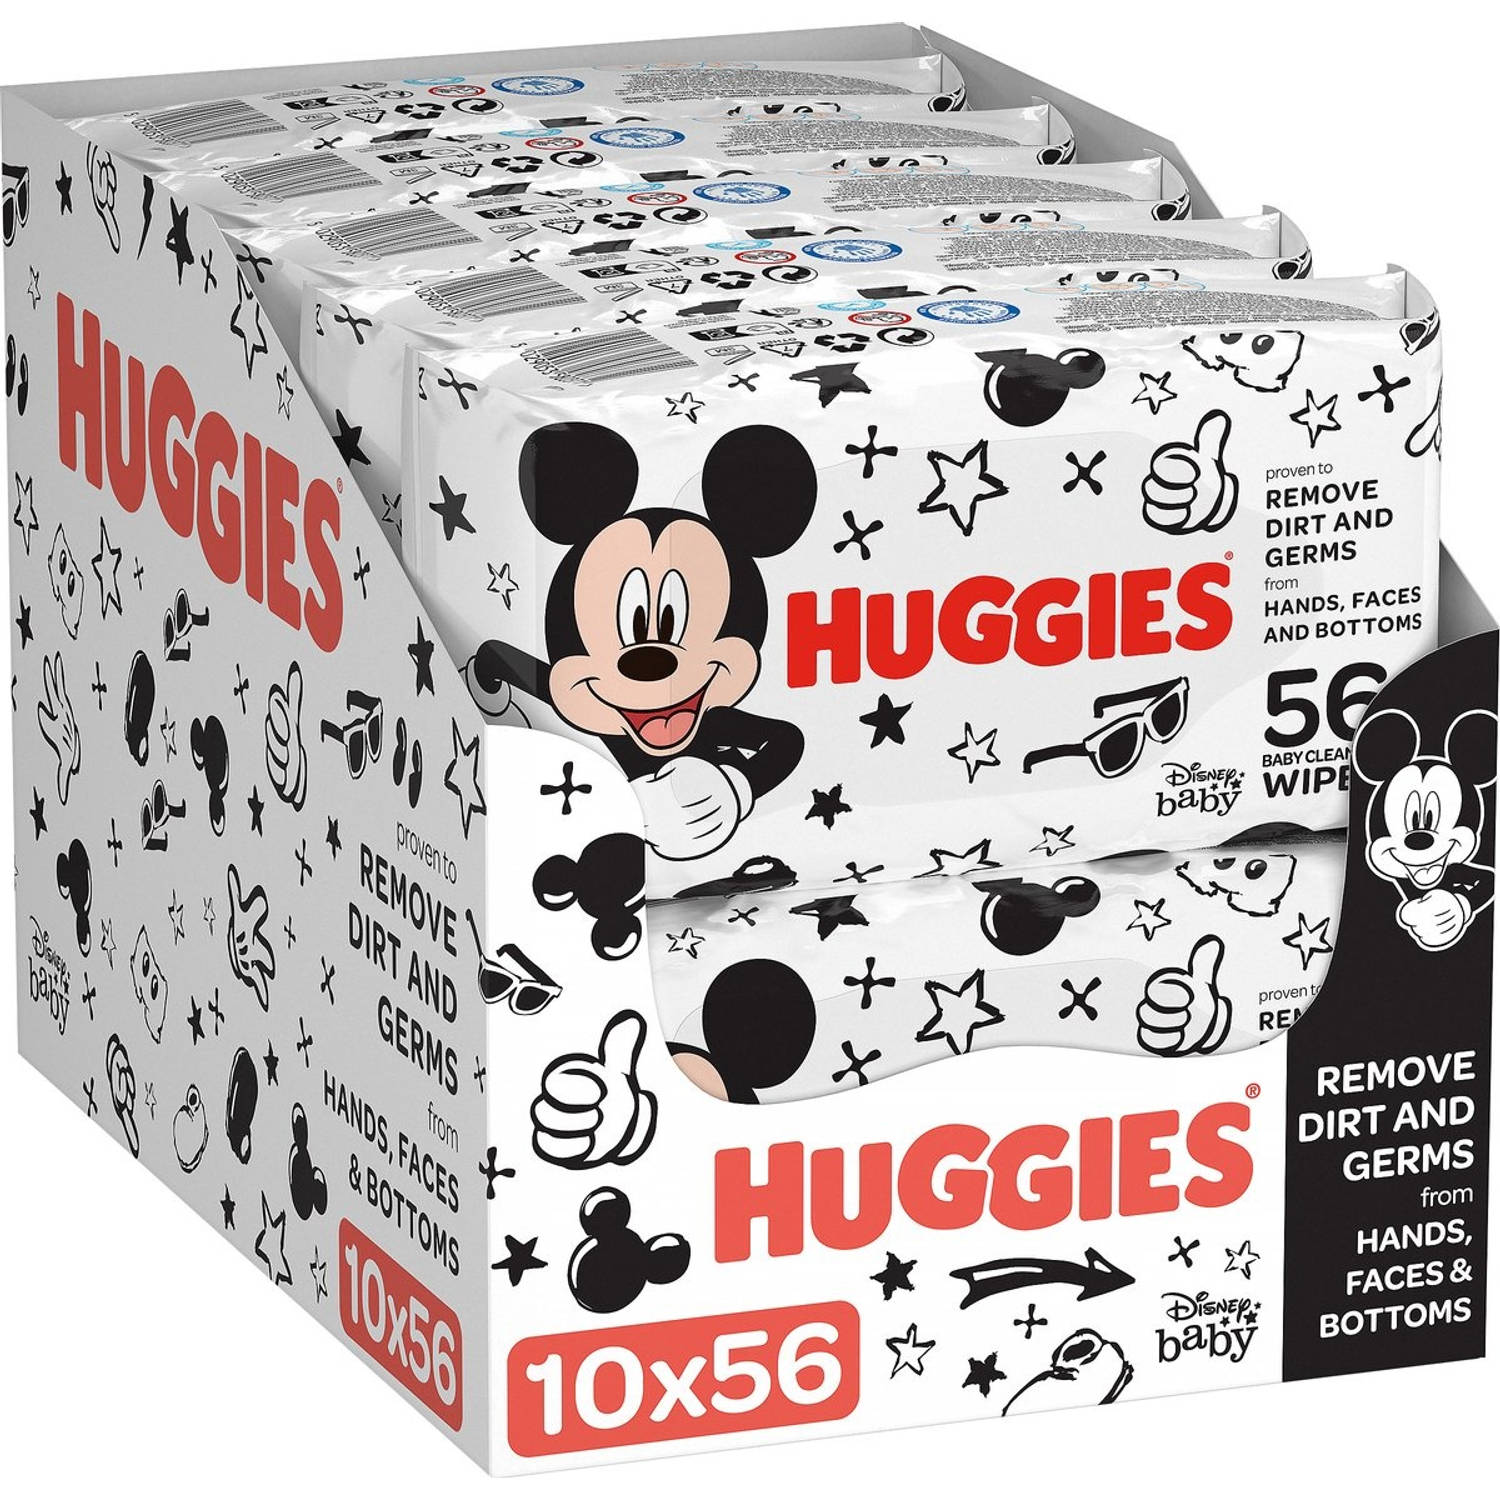 Huggies billendoekjes - Mickey Mouse All Over Clean - 10 x 56 stuks - 560 doekjes - Voordeelverpakking